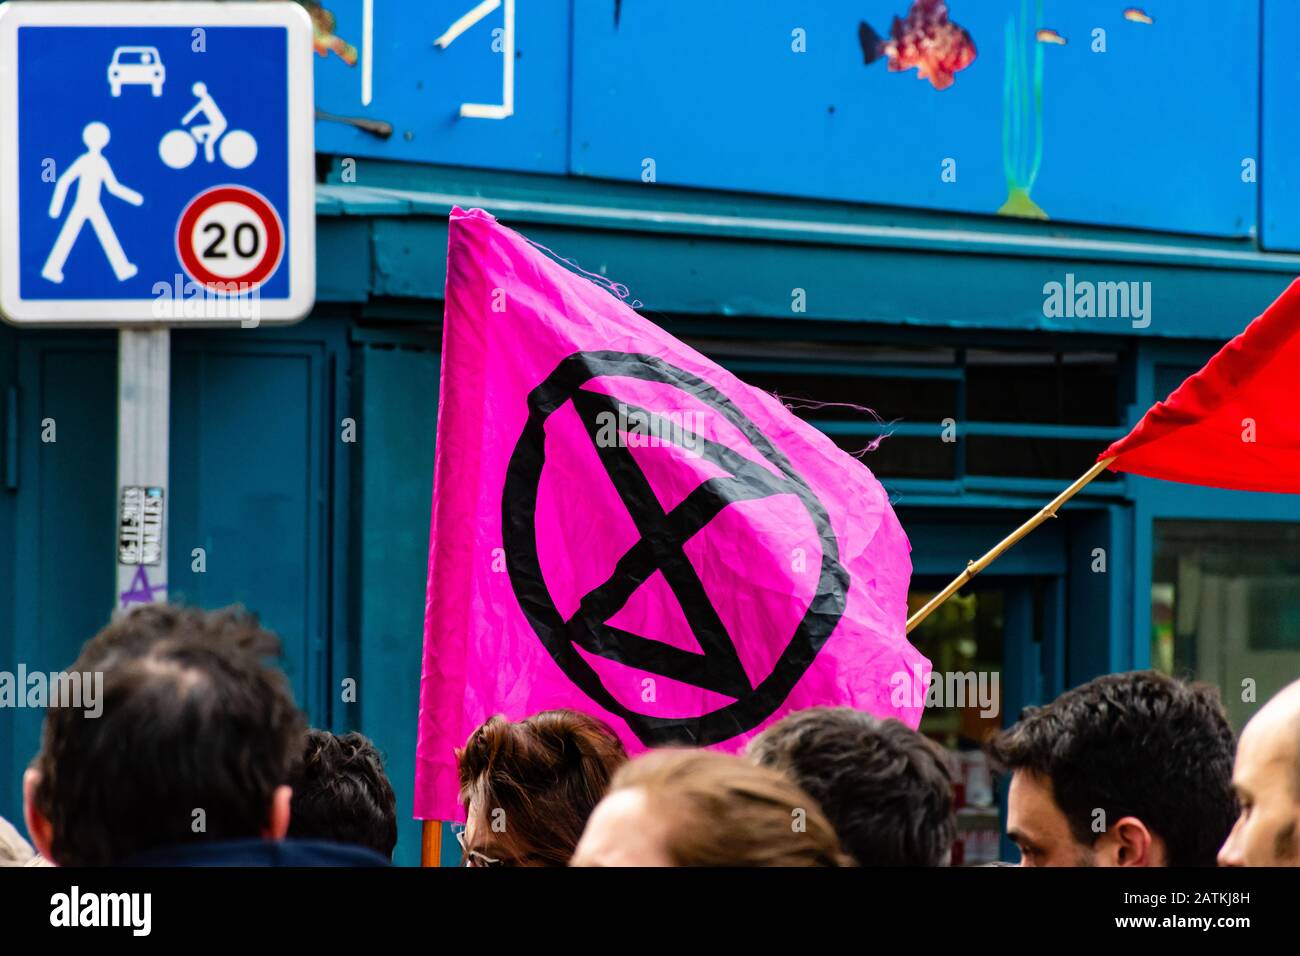 Marseille, France - 25 janvier 2020: Protester portant le drapeau de la rébellion de l'extinction lors d'une 'arche de la colière' ('arche de colère') sur les questions de logement Banque D'Images